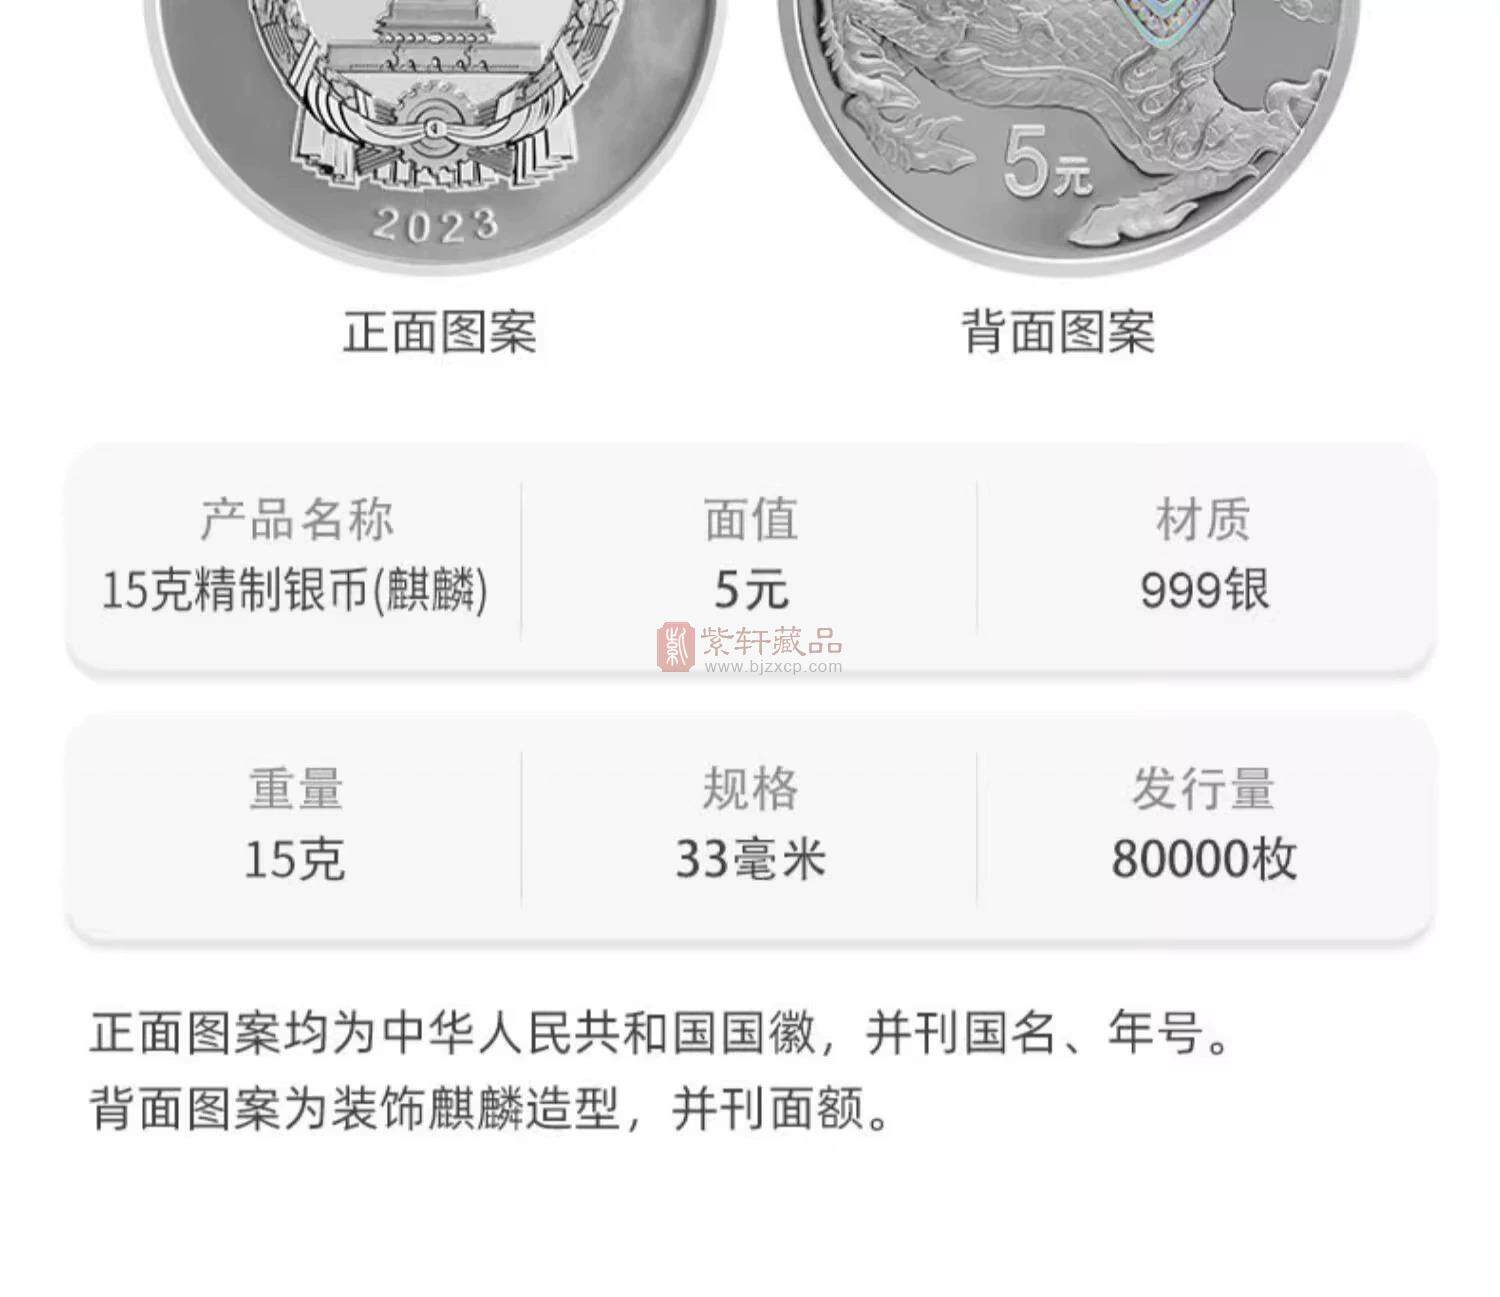 【新品预约】中华传统瑞兽金银纪念币 4金+4银大全套